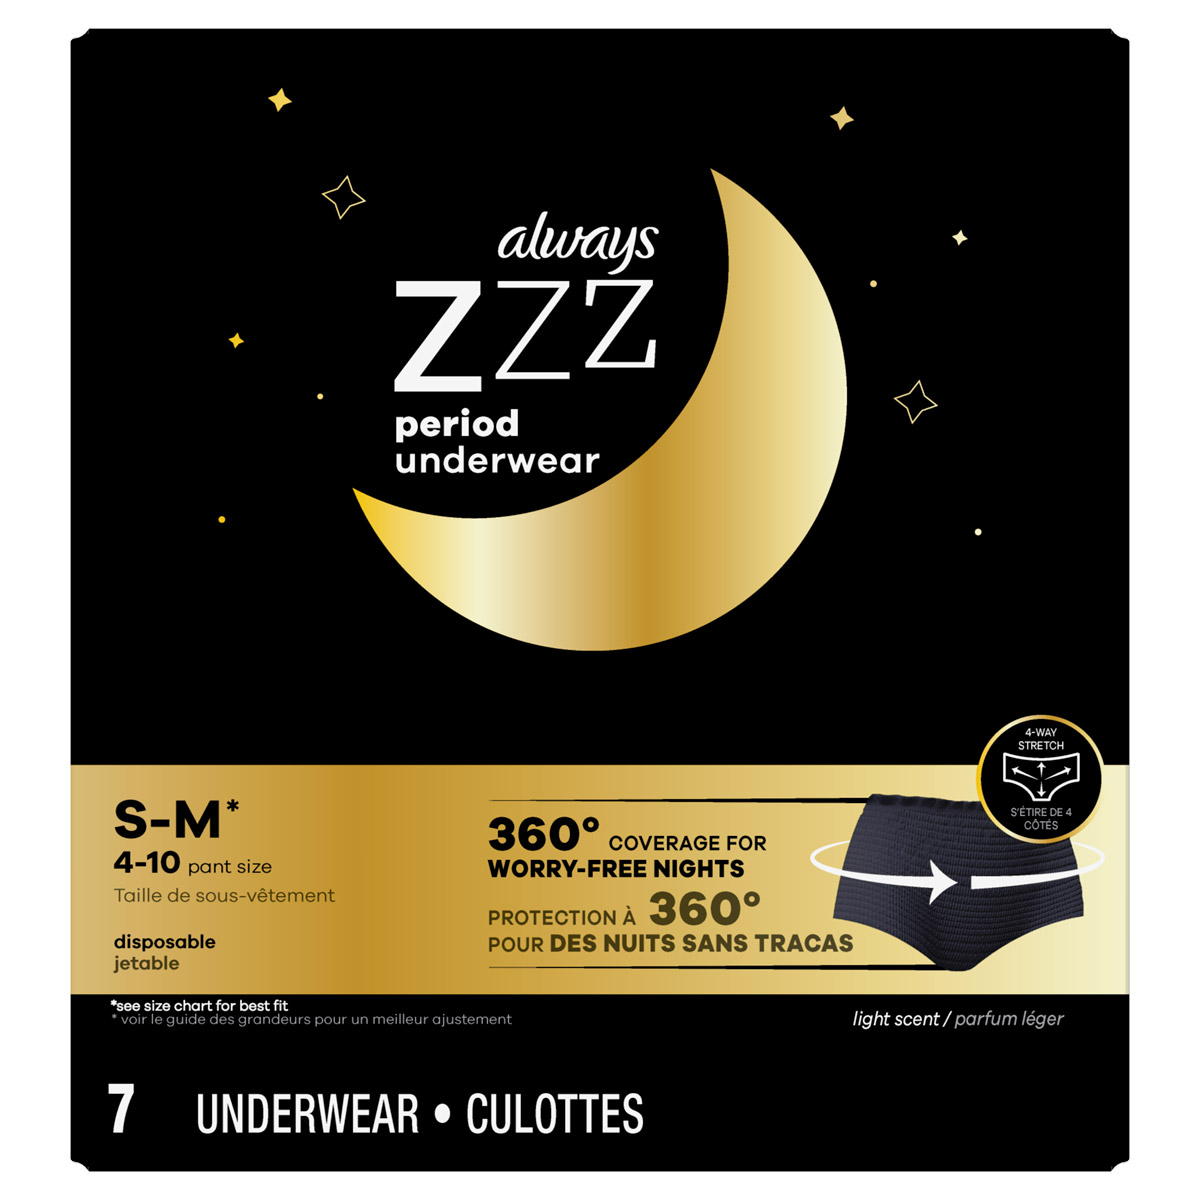 Review of @always Zzz Period Underwear #2##firsttiktok #auntflow #mens